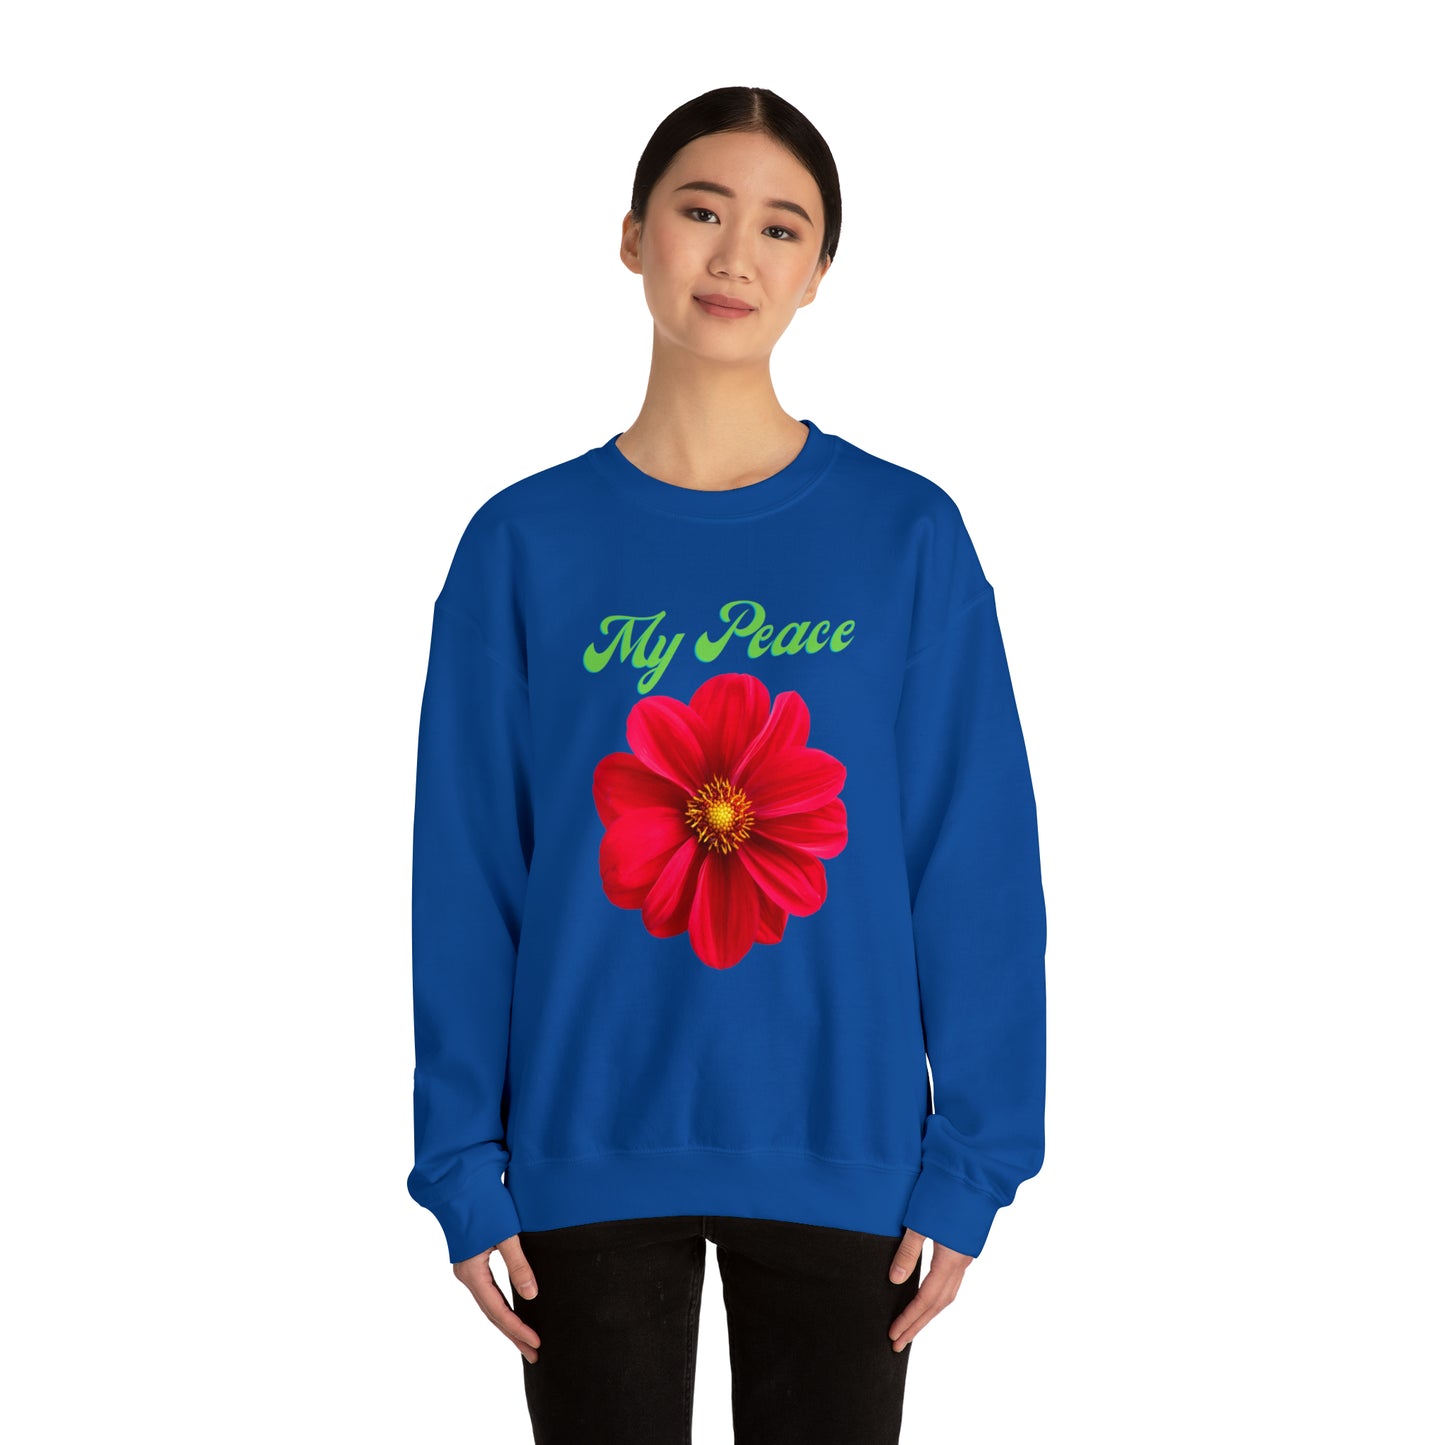 Red Flower design Statement sweatshirt Gift